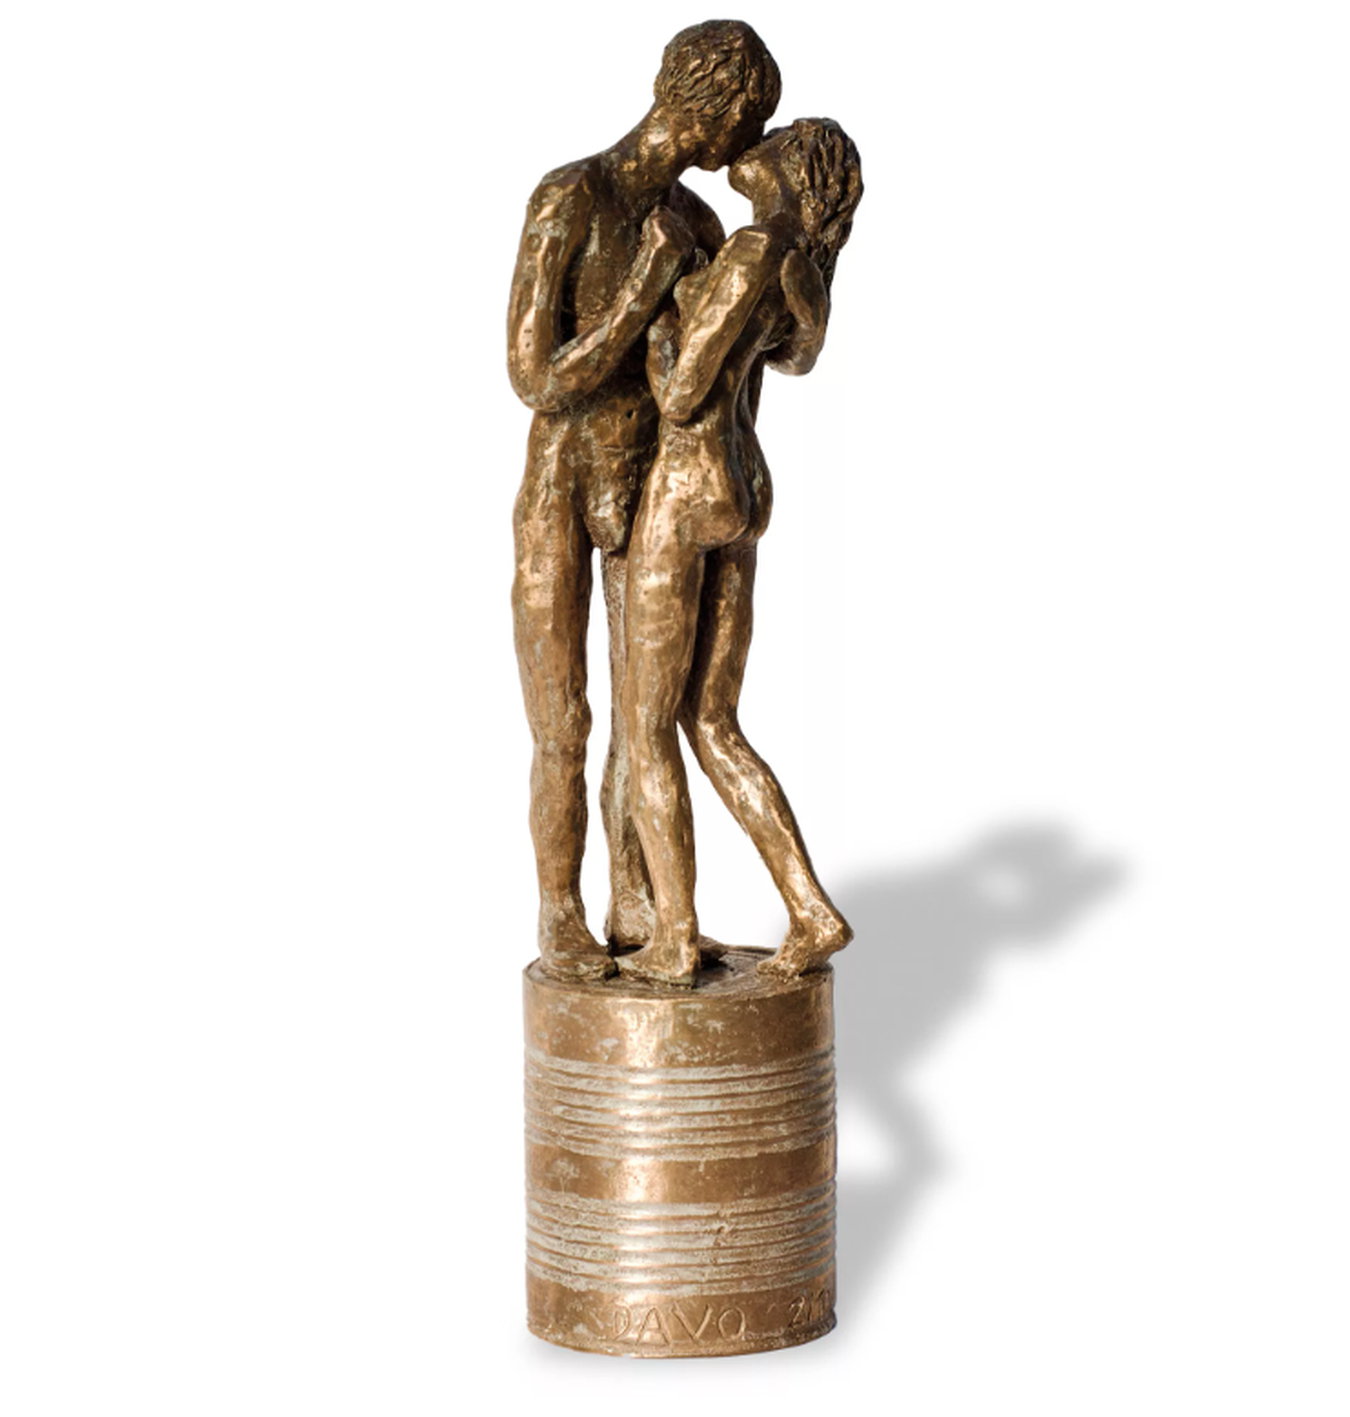 Liebesskulptur "Küss mich" (2022) von Dagmar Vogt